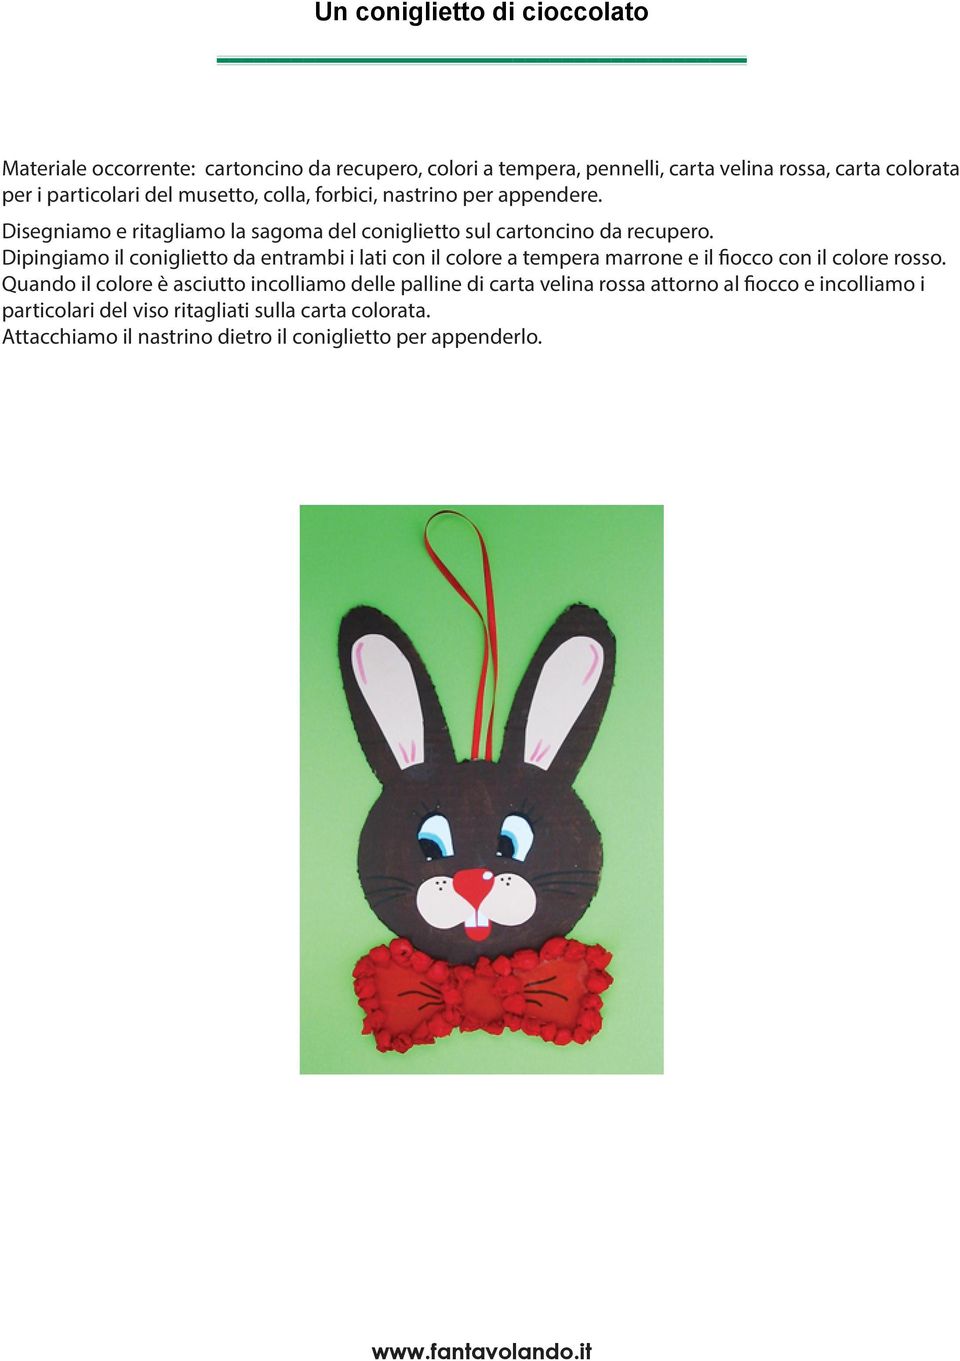 Dipingiamo il coniglietto da entrambi i lati con il colore a tempera marrone e il fiocco con il colore rosso.